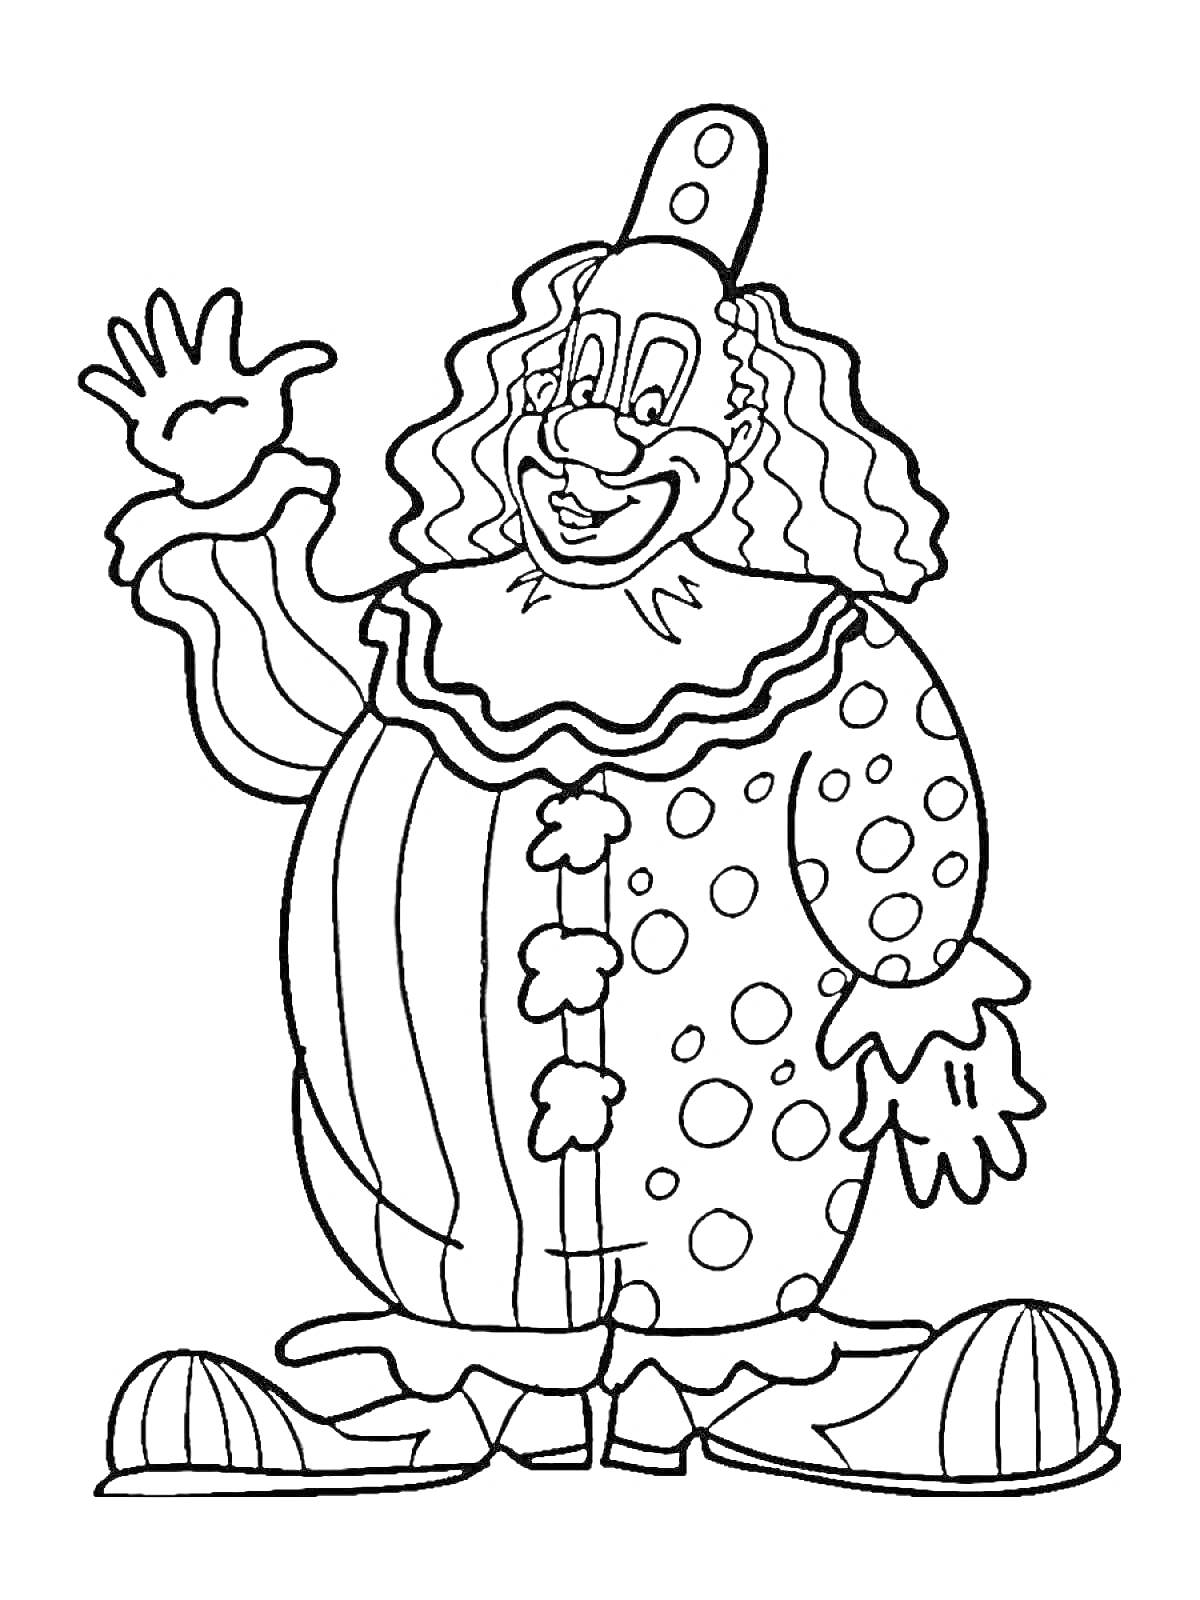 Раскраска Клоун с волнистыми волосами, в полосатых и горошковых одеждах, с пятнистым шляпой, подмигивающий и машущий рукой